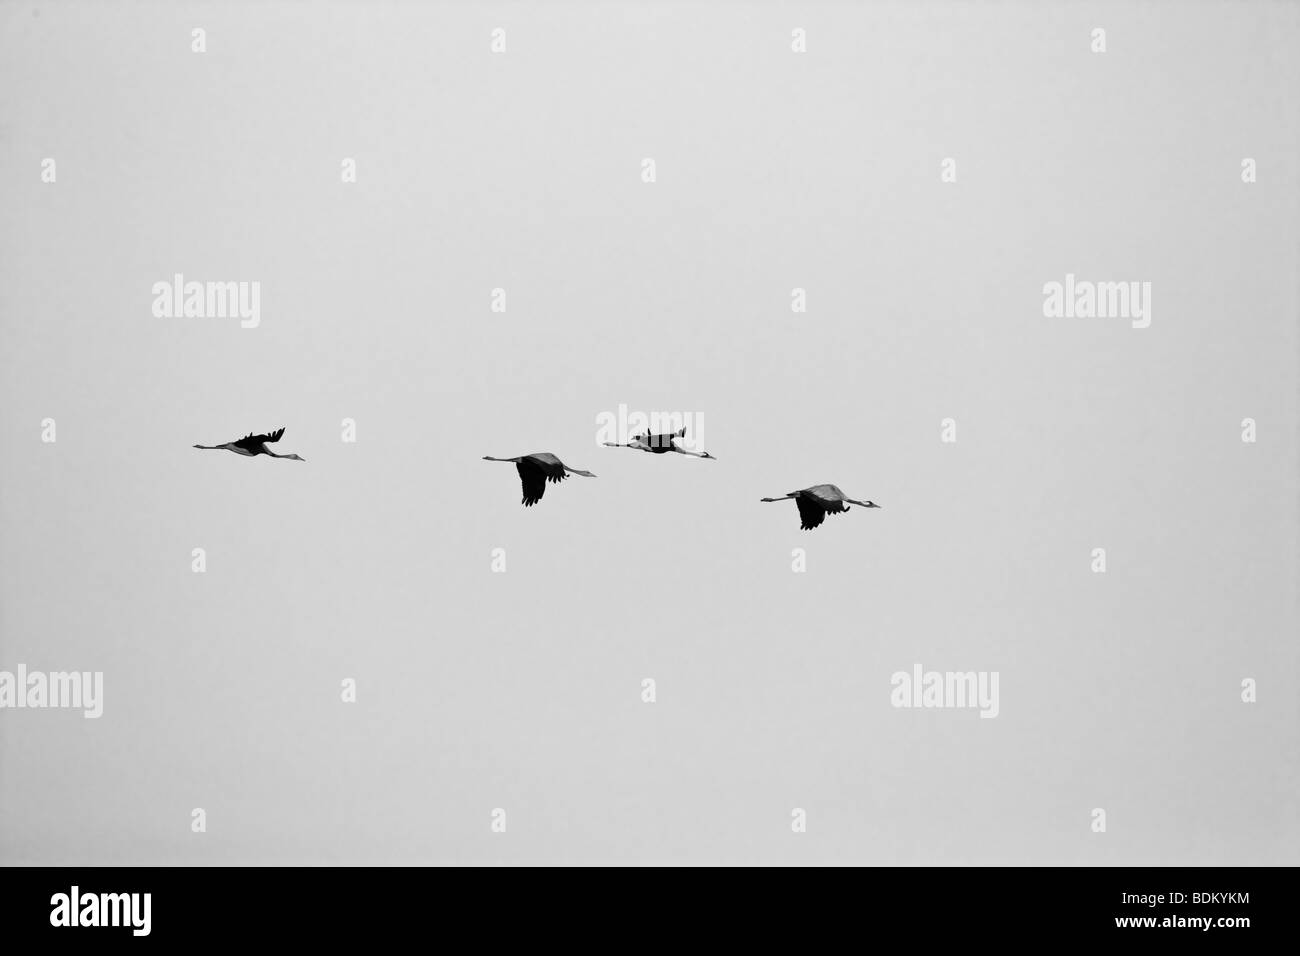 Common cranes in flight Stock Photo